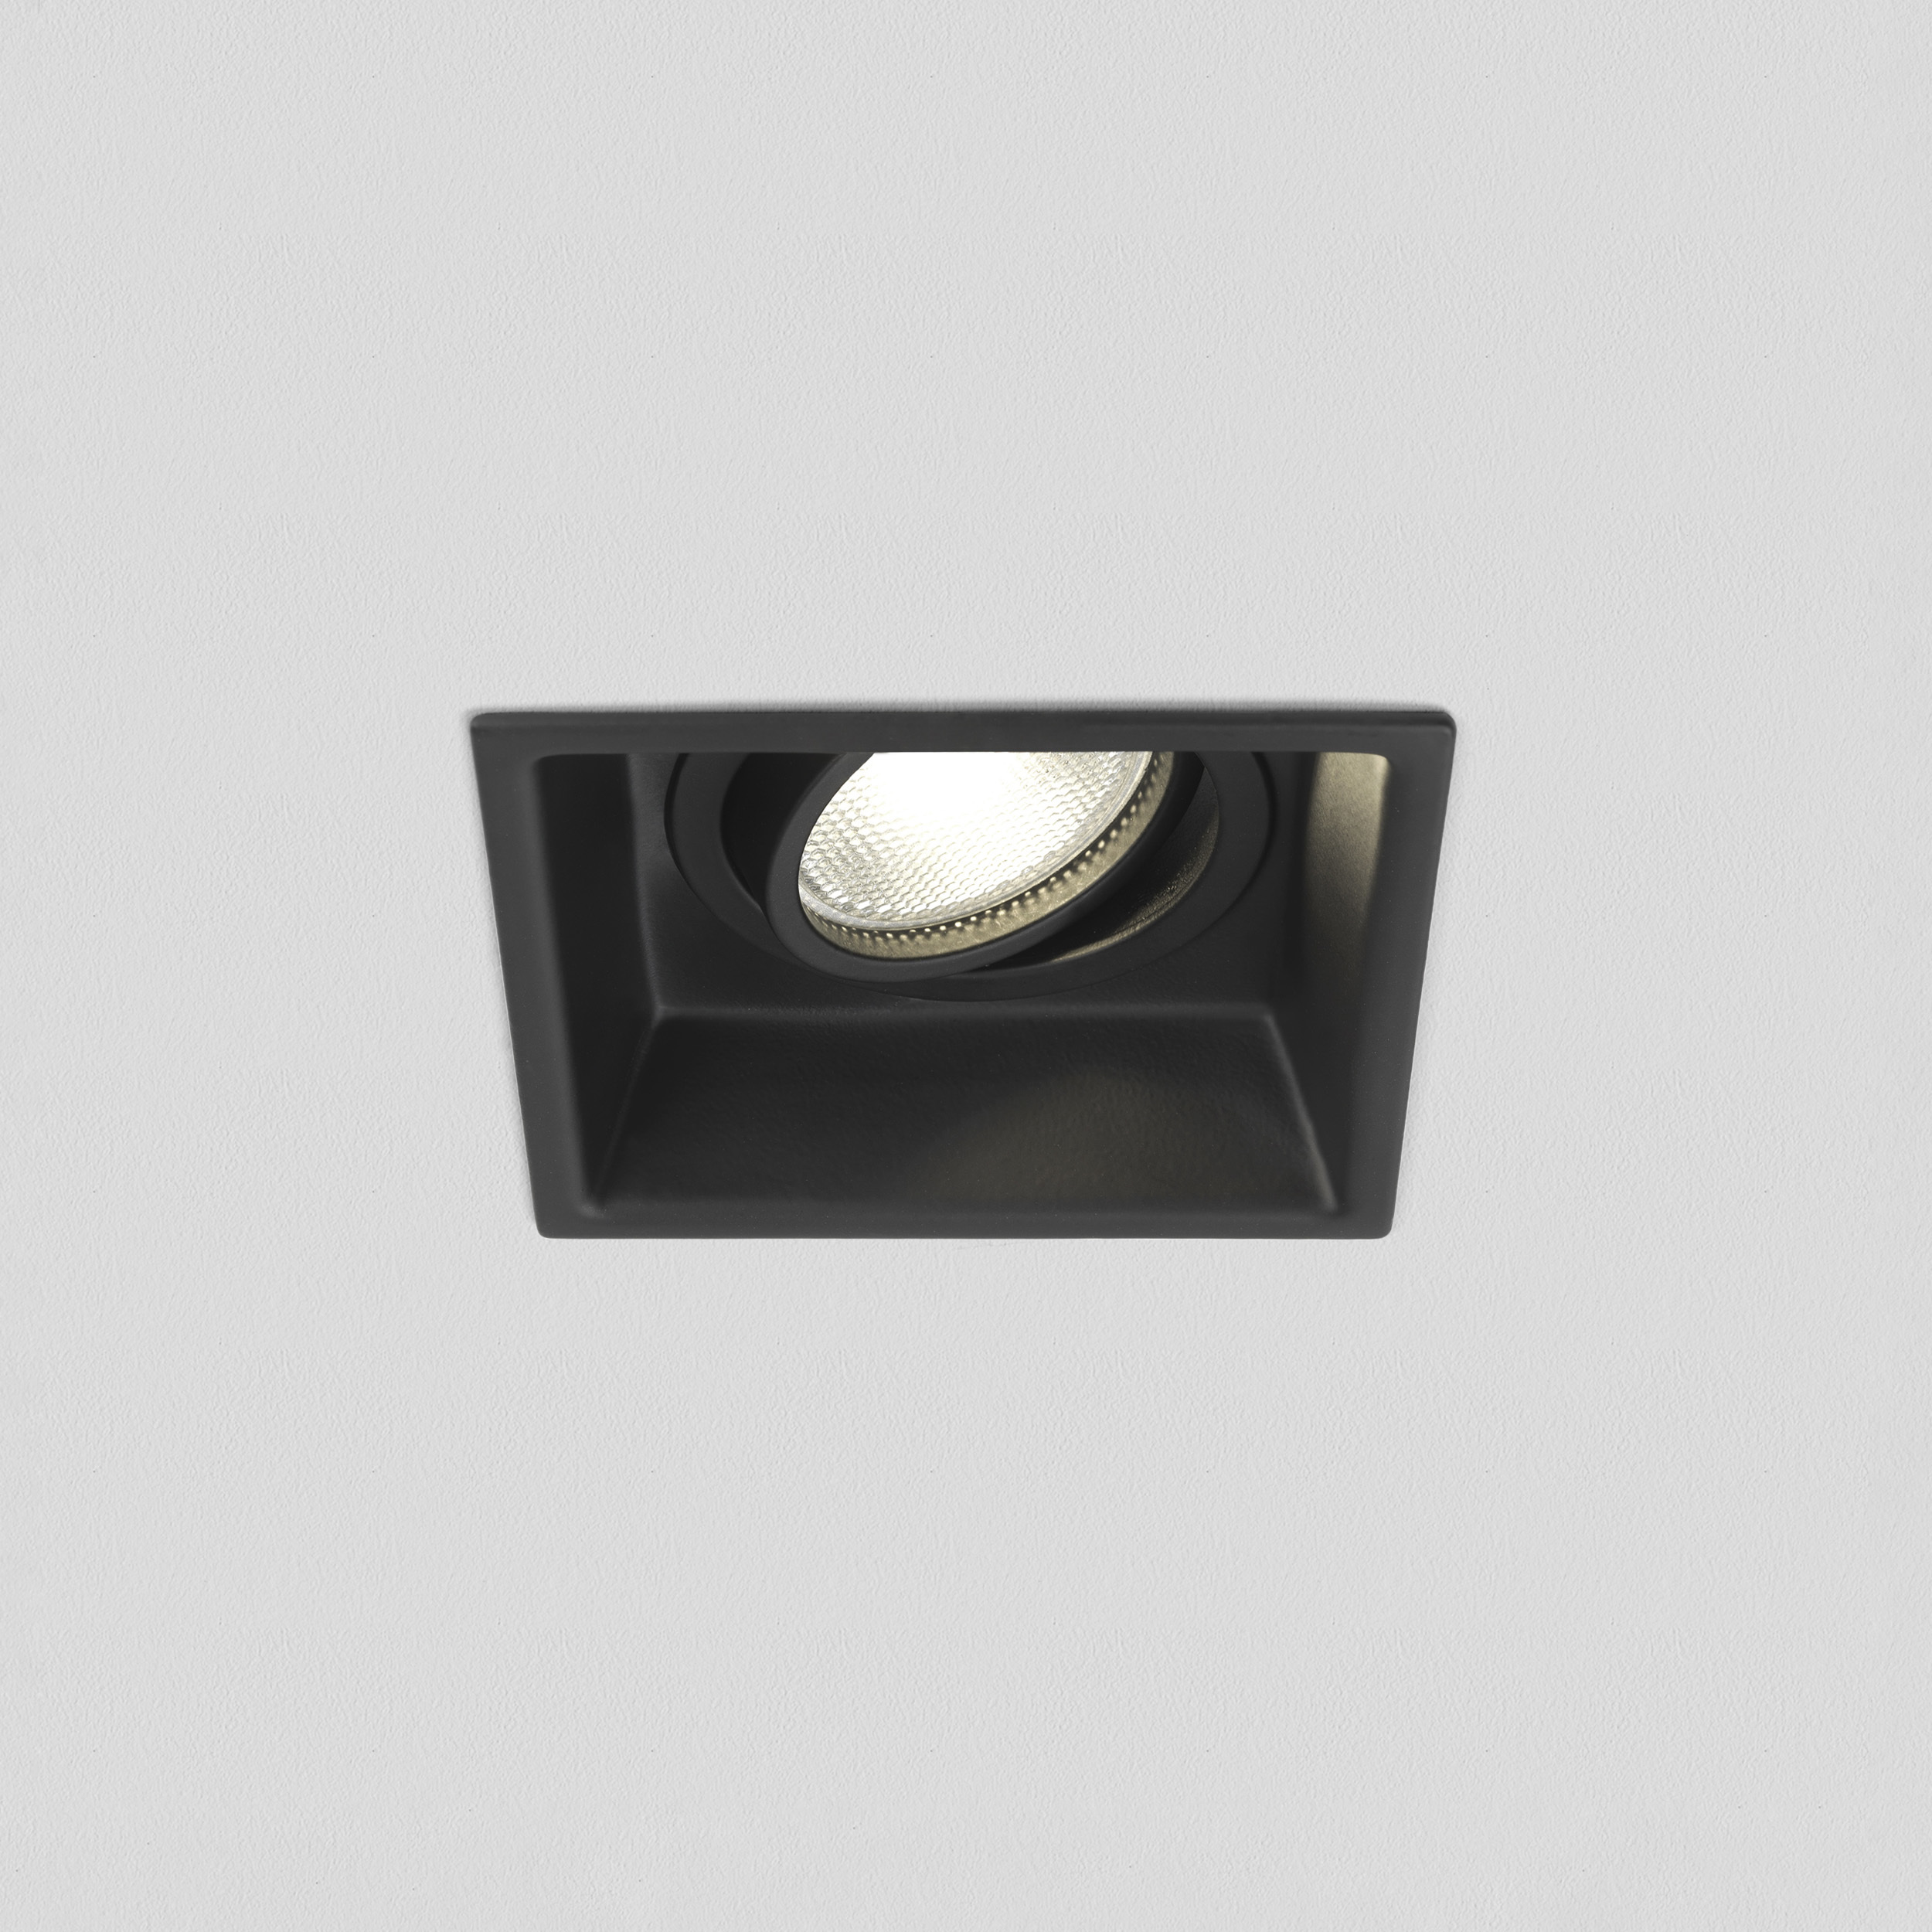 Встраиваемый светильник Astro Minima 1249020 (5796), 1xGU10x50W, черный, металл - фото 1